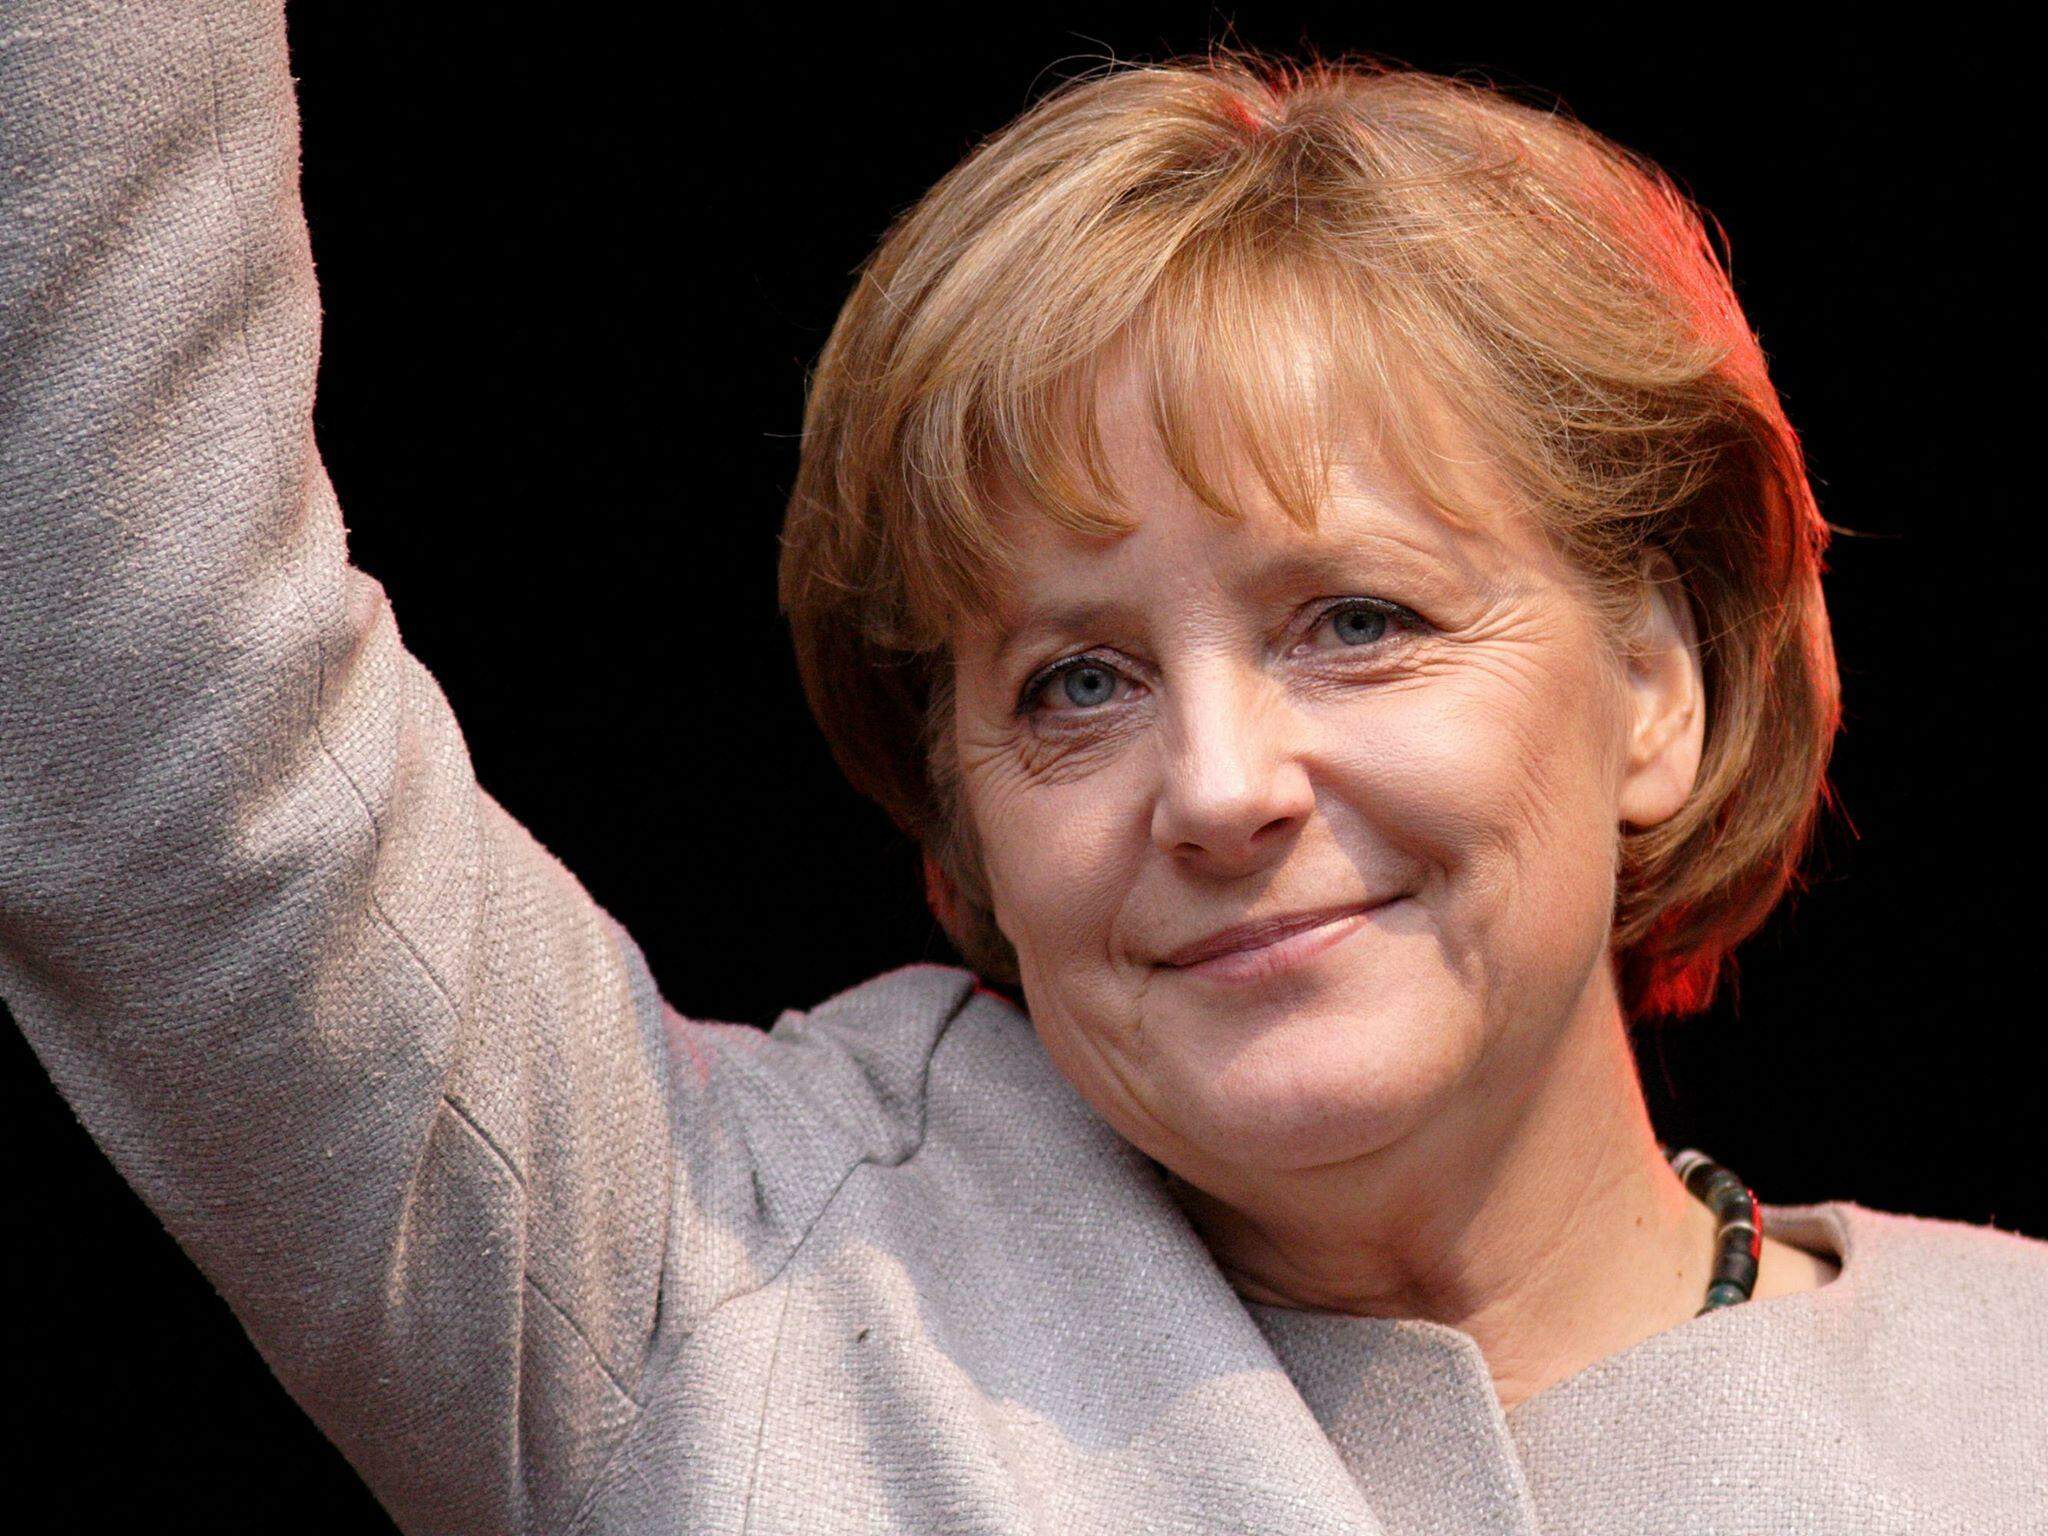 A chanceler alemã Angela Merkel é a mulher mais poderosa do mundo segundo a revista Forbes.